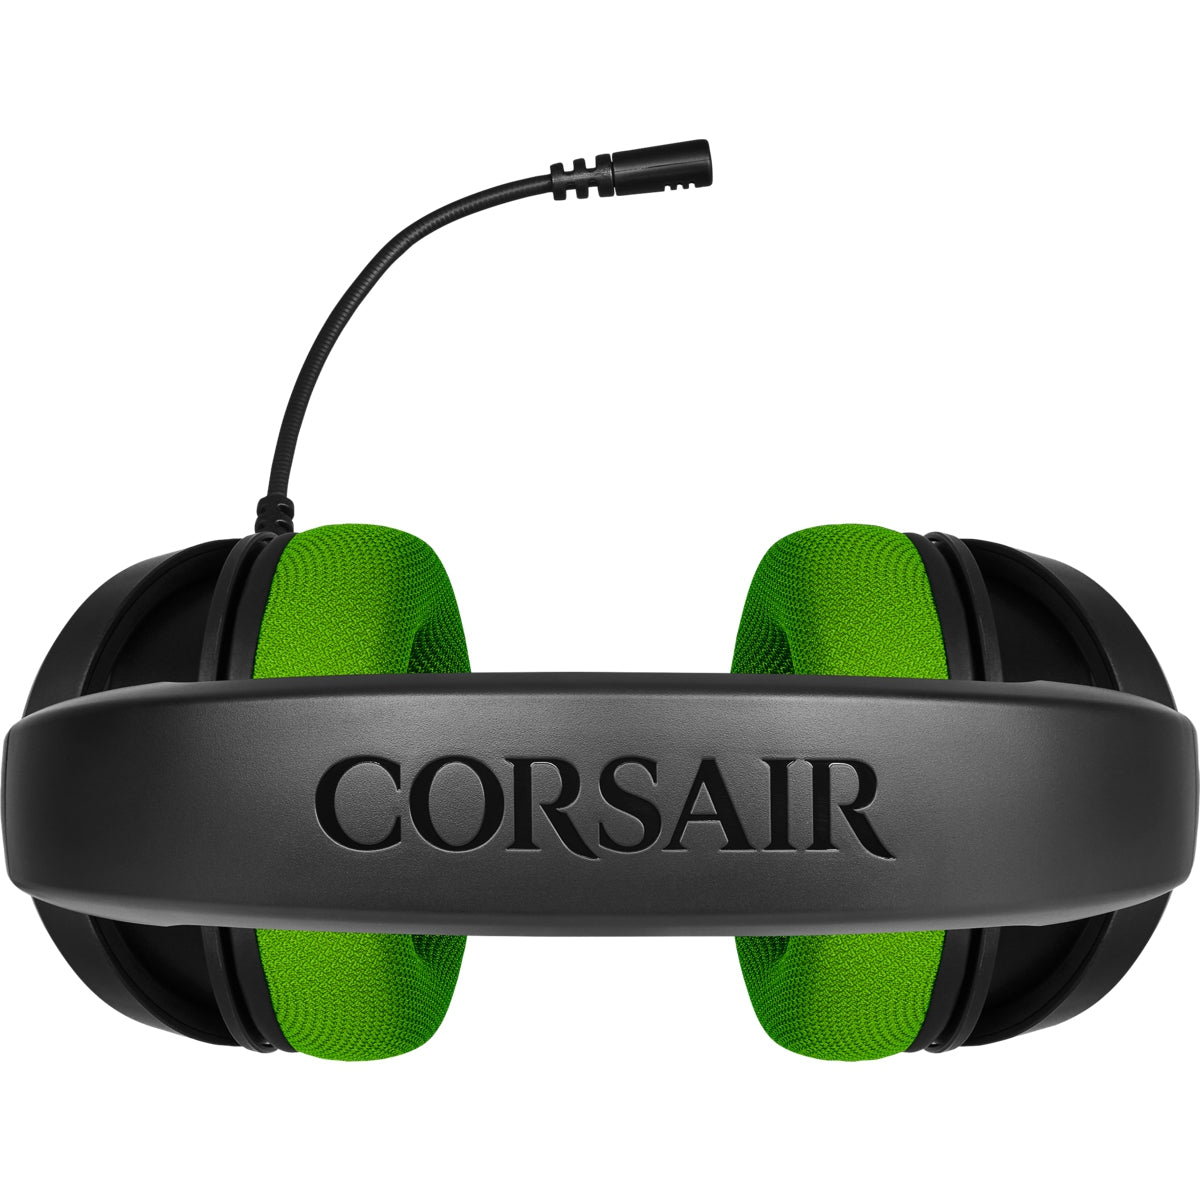 Headset Corsair Hs35 Stereo Gaming Green 3.5 Mm Ca-9011197-Na